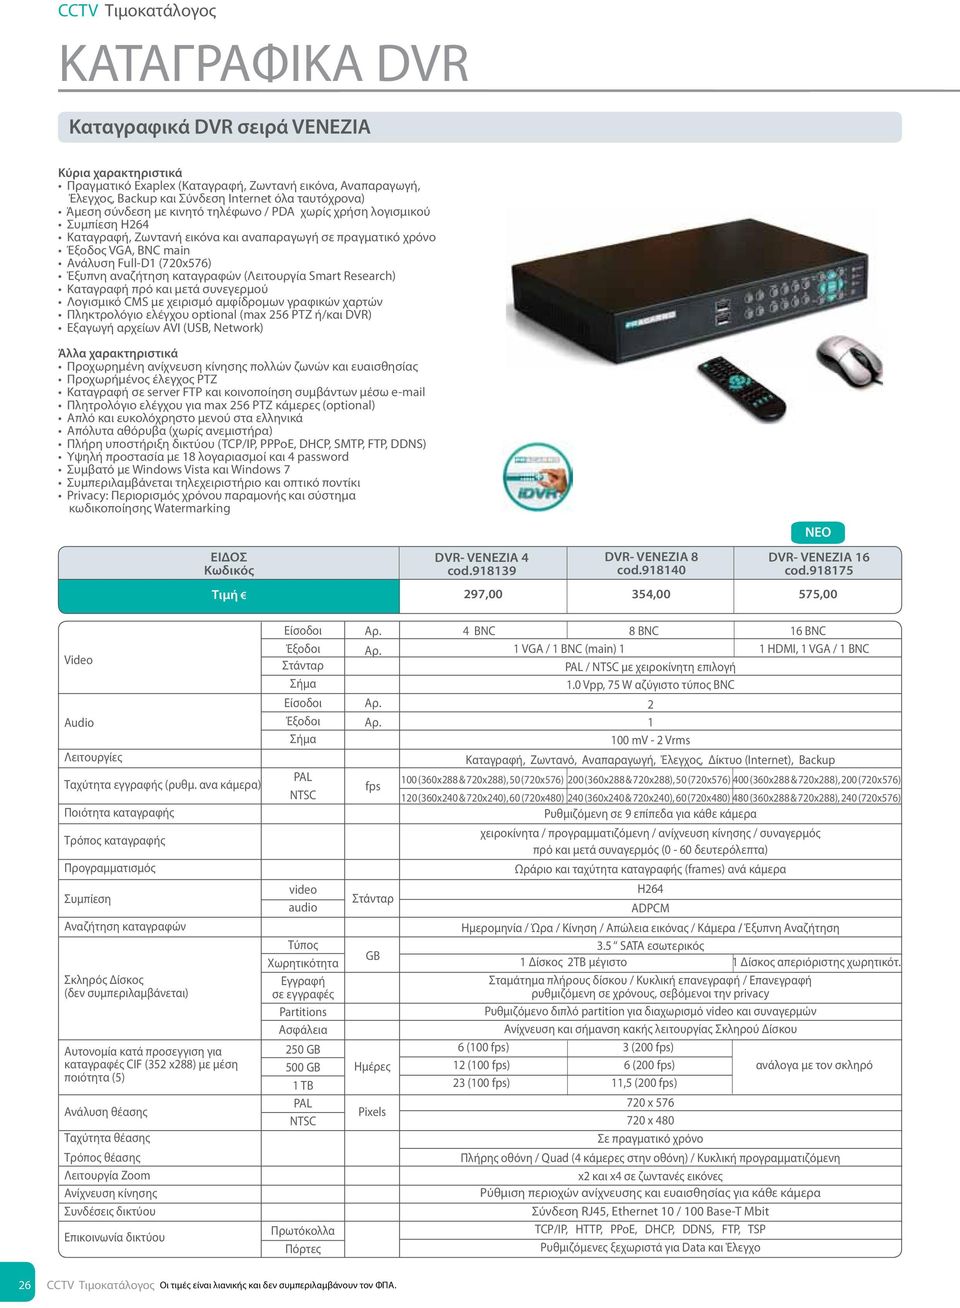 αμφίδρομων γραφικών χαρτών Πληκτρολόγιο ελέγχου optional (max 256 ΡΤΖ ή/και DVR) Εξαγωγή αρχείων AVI (USB, Network) Προχωρημένη ανίχνευση κίνησης πολλών ζωνών και ευαισθησίας Προχωρήμένος έλεγχος ΡΤΖ